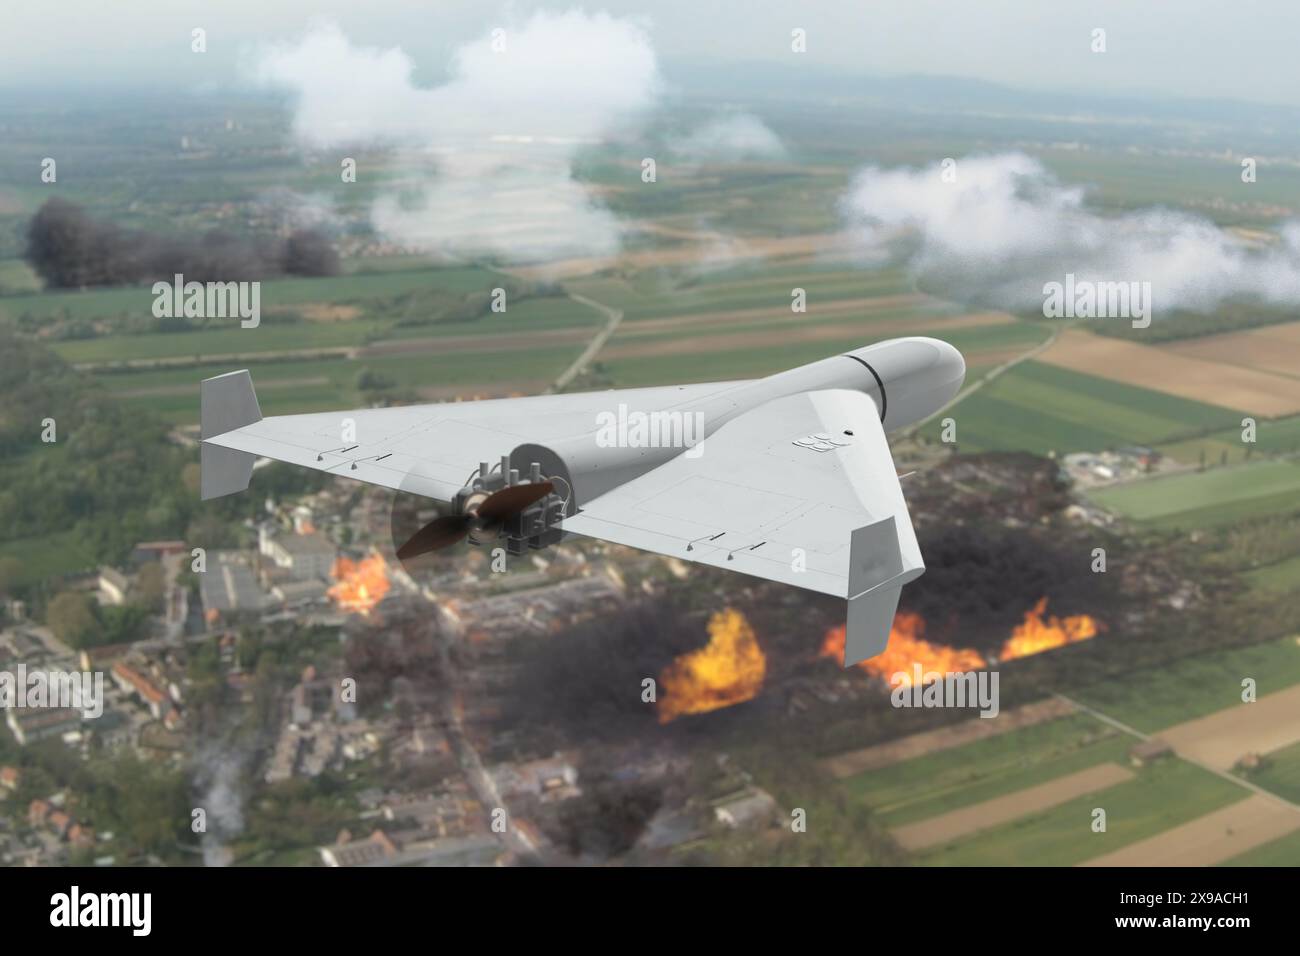 Un drone militaire sans pilote vole dans le ciel au-dessus d'une ville détruite et brûlante. Concept : attaque aérienne, guerre en Ukraine. Banque D'Images